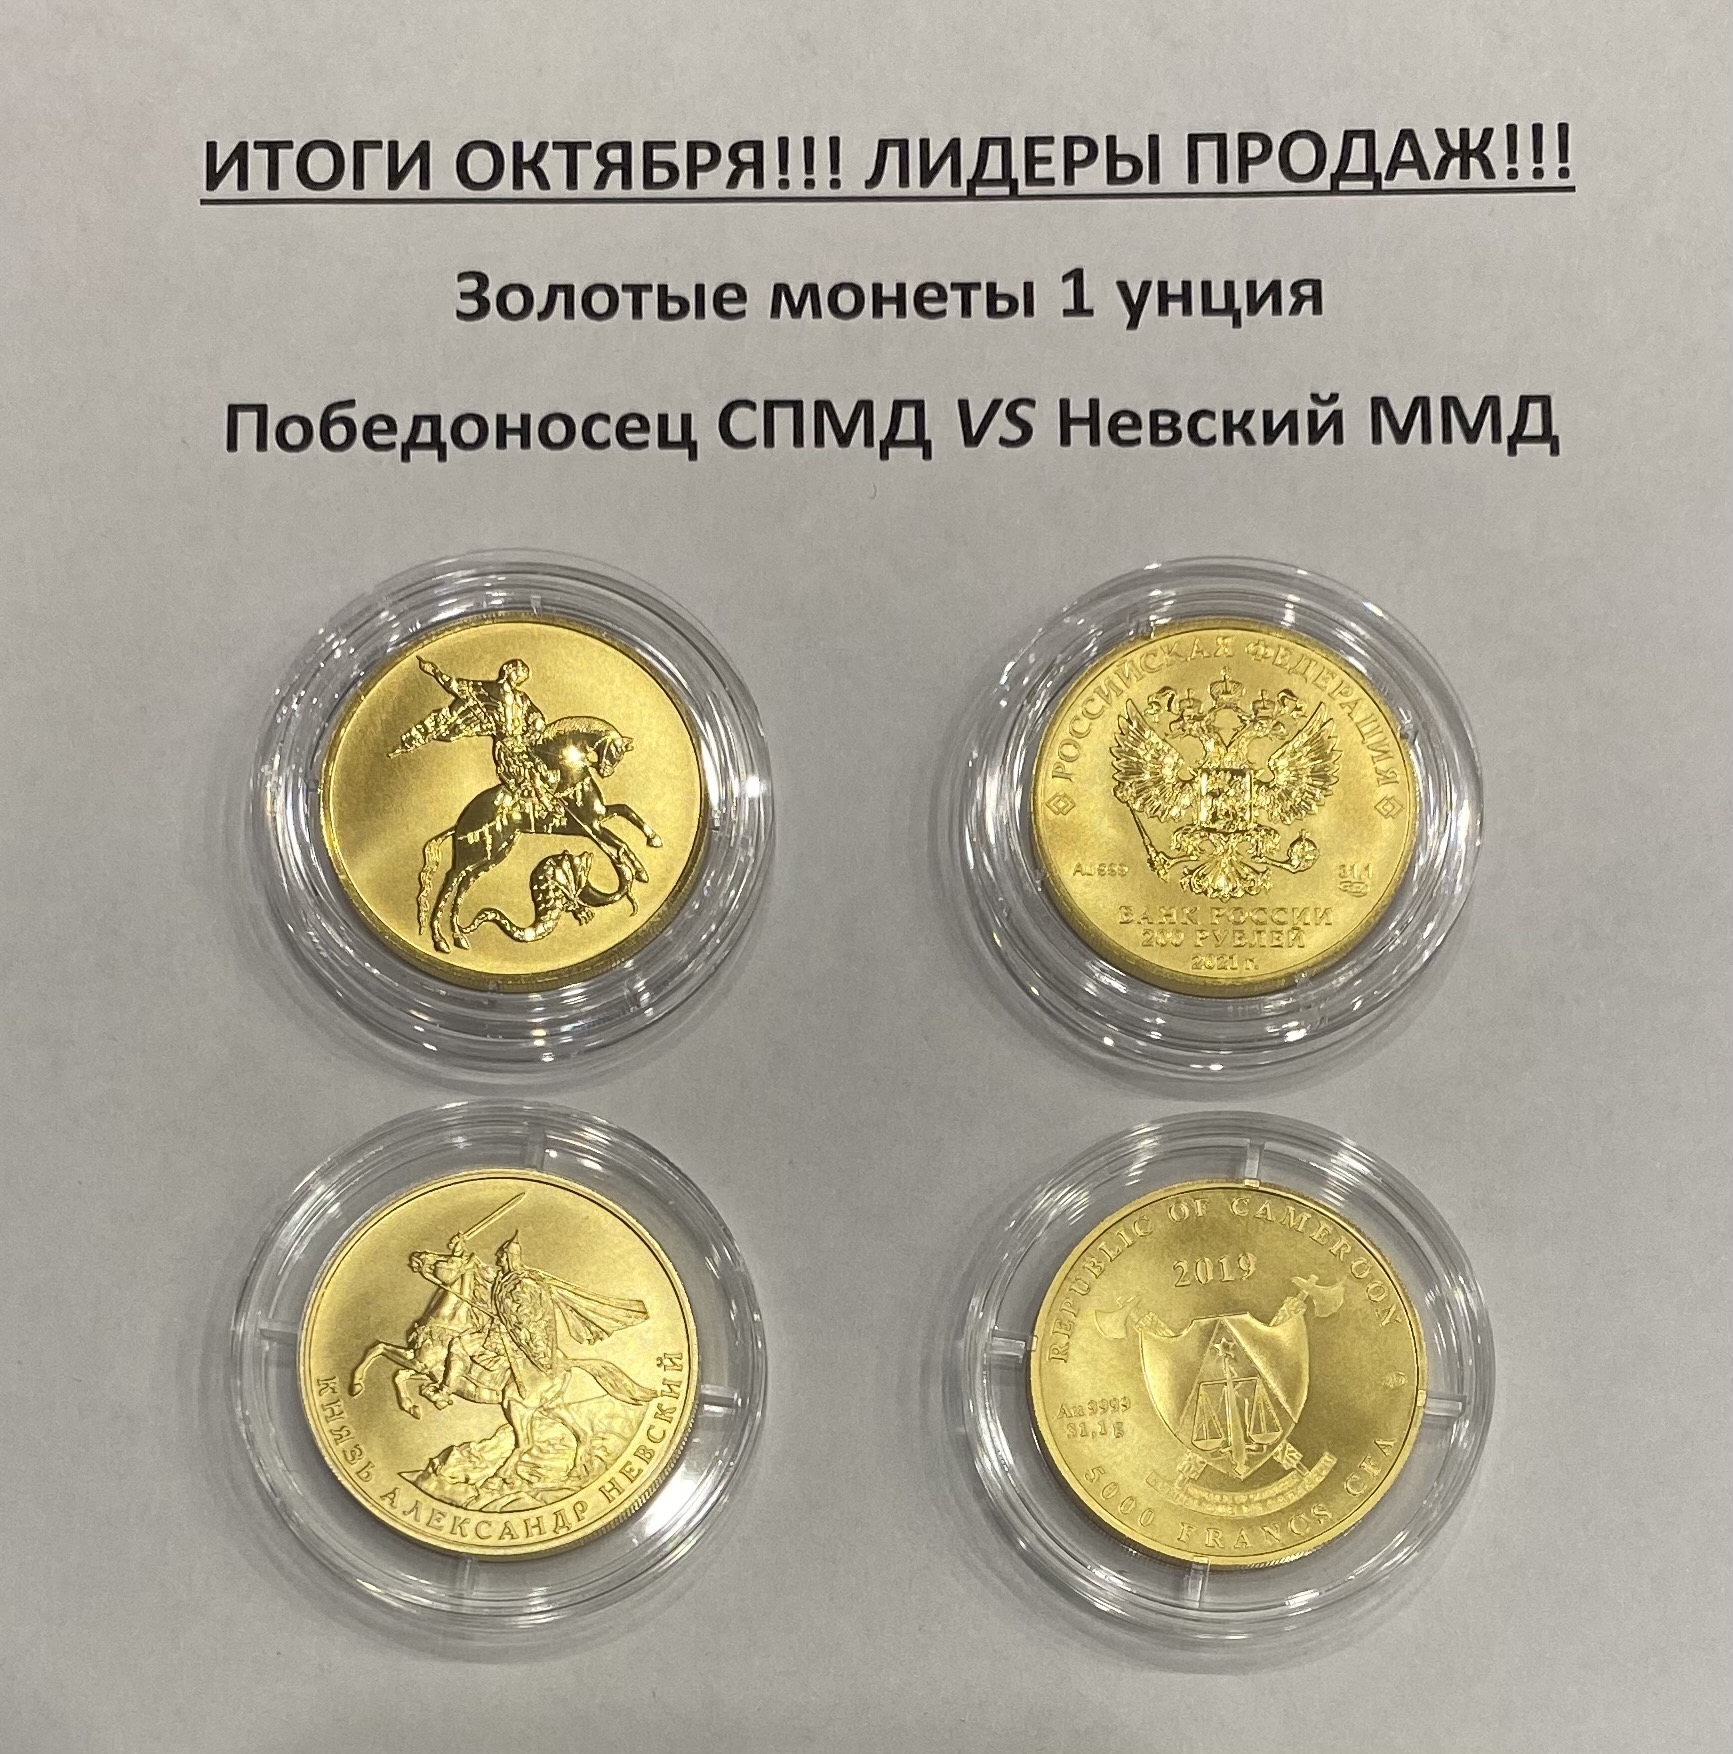 Лидеры продаж октября 2021г. среди золотоых унцовых монет.